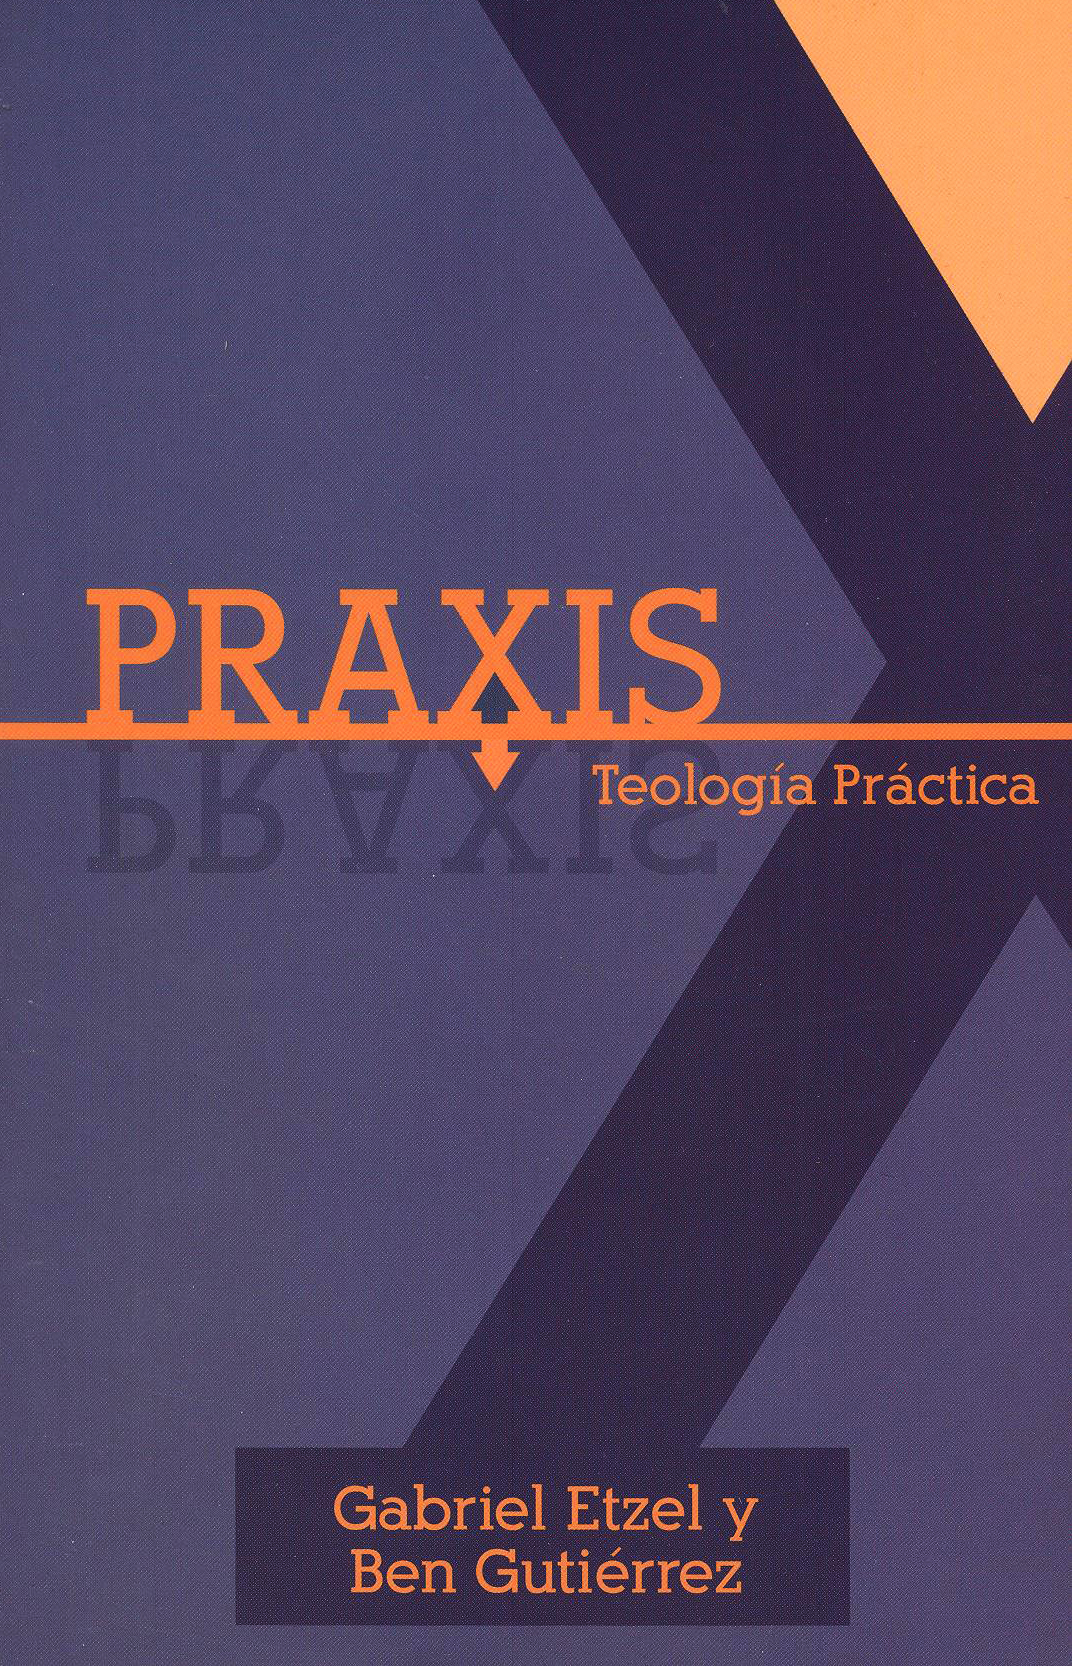 Praxis: Teología Práctica